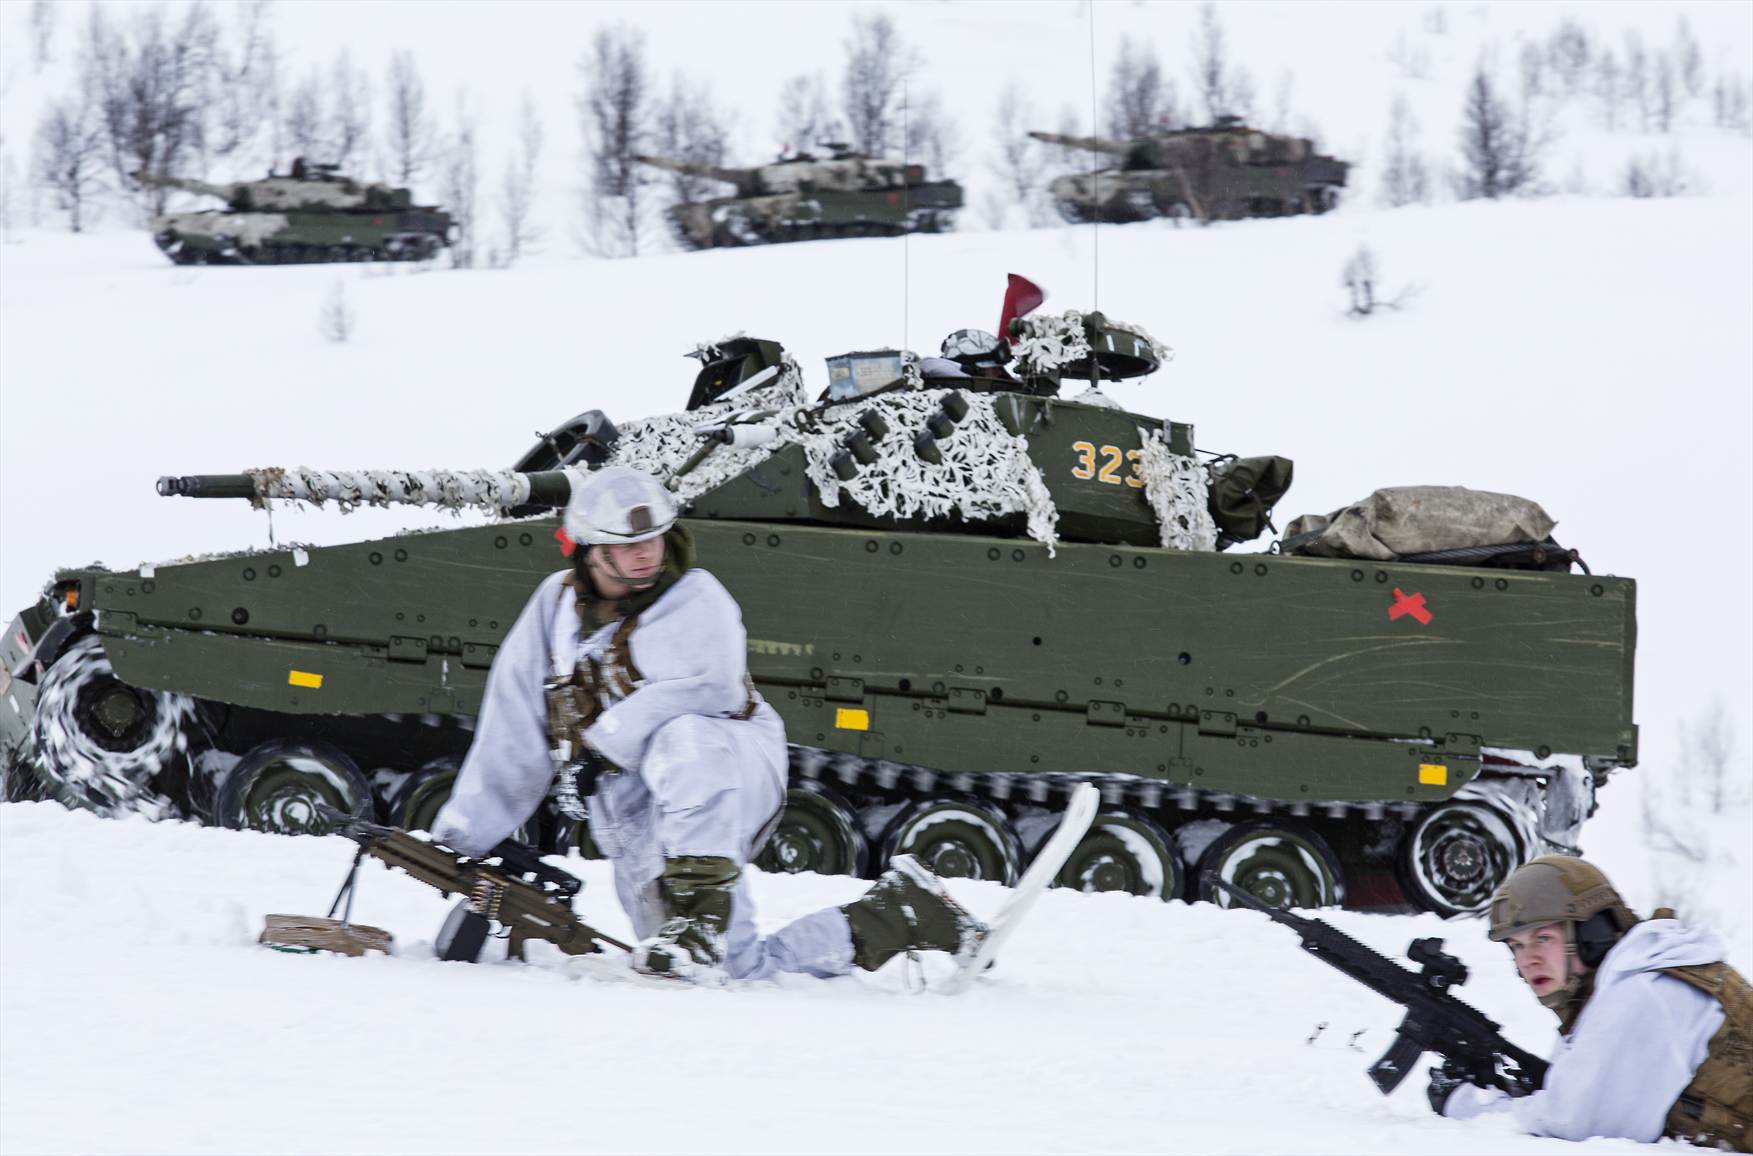 Σουηδία, Νορβηγία και Φινλανδία δημιουργούν διάδρομο στρατιωτικών μεταφορών στην αρκτική ζώνη λόγω Ρωσίας